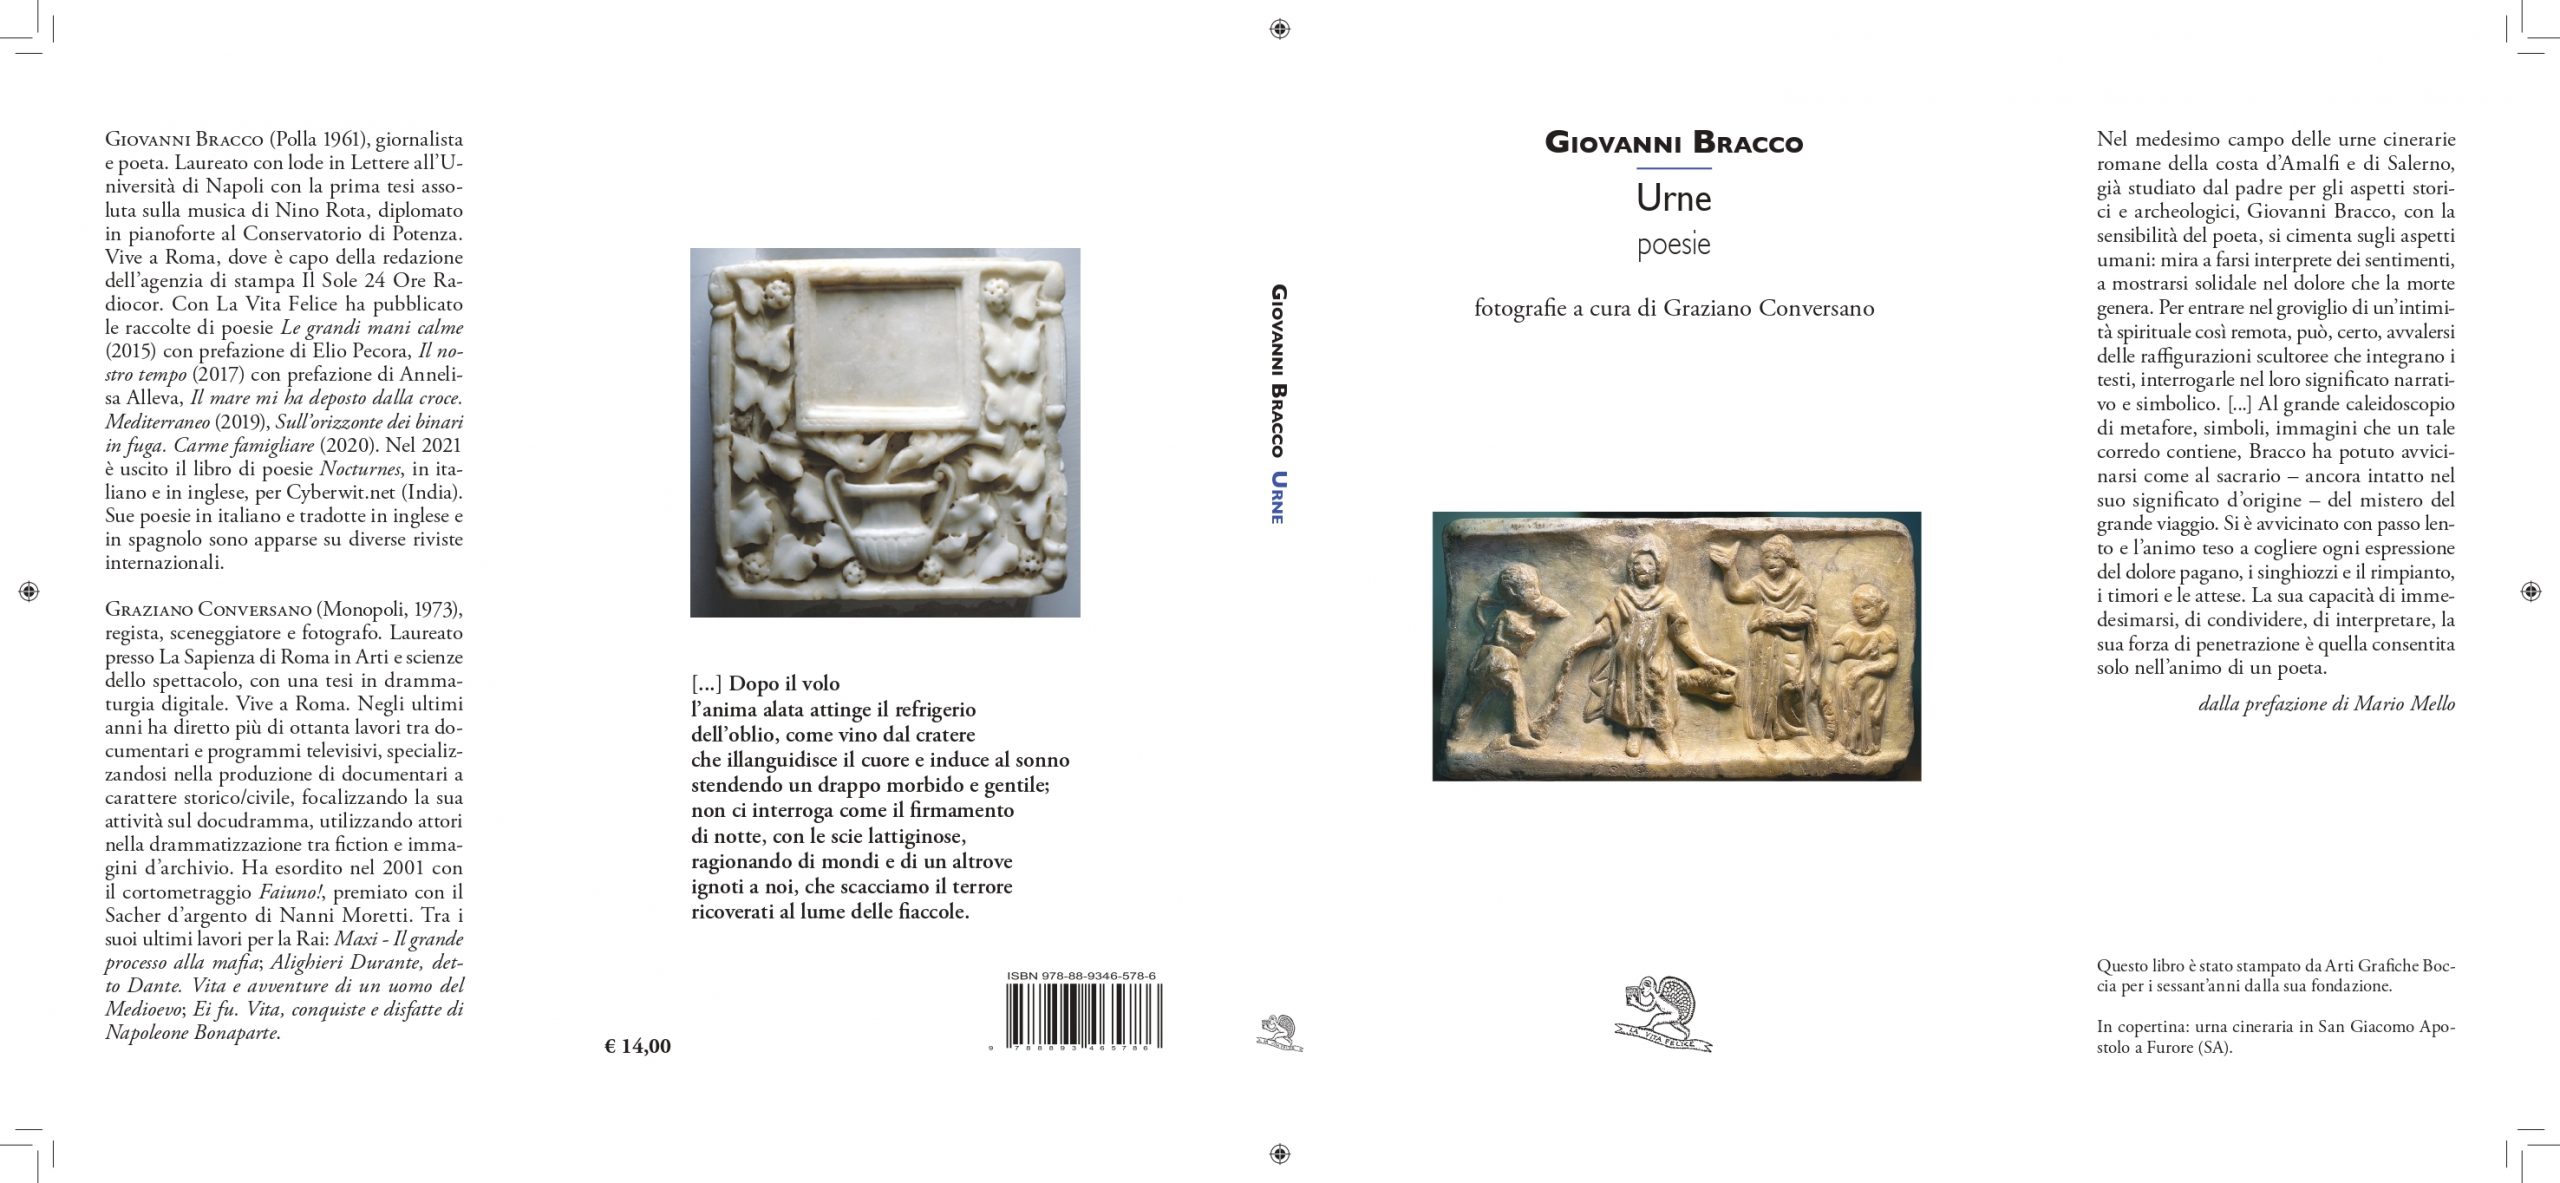 Salerno: in libreria “Urne”, silloge poetica di Giovanni Bracco -La Vita Felice Editore